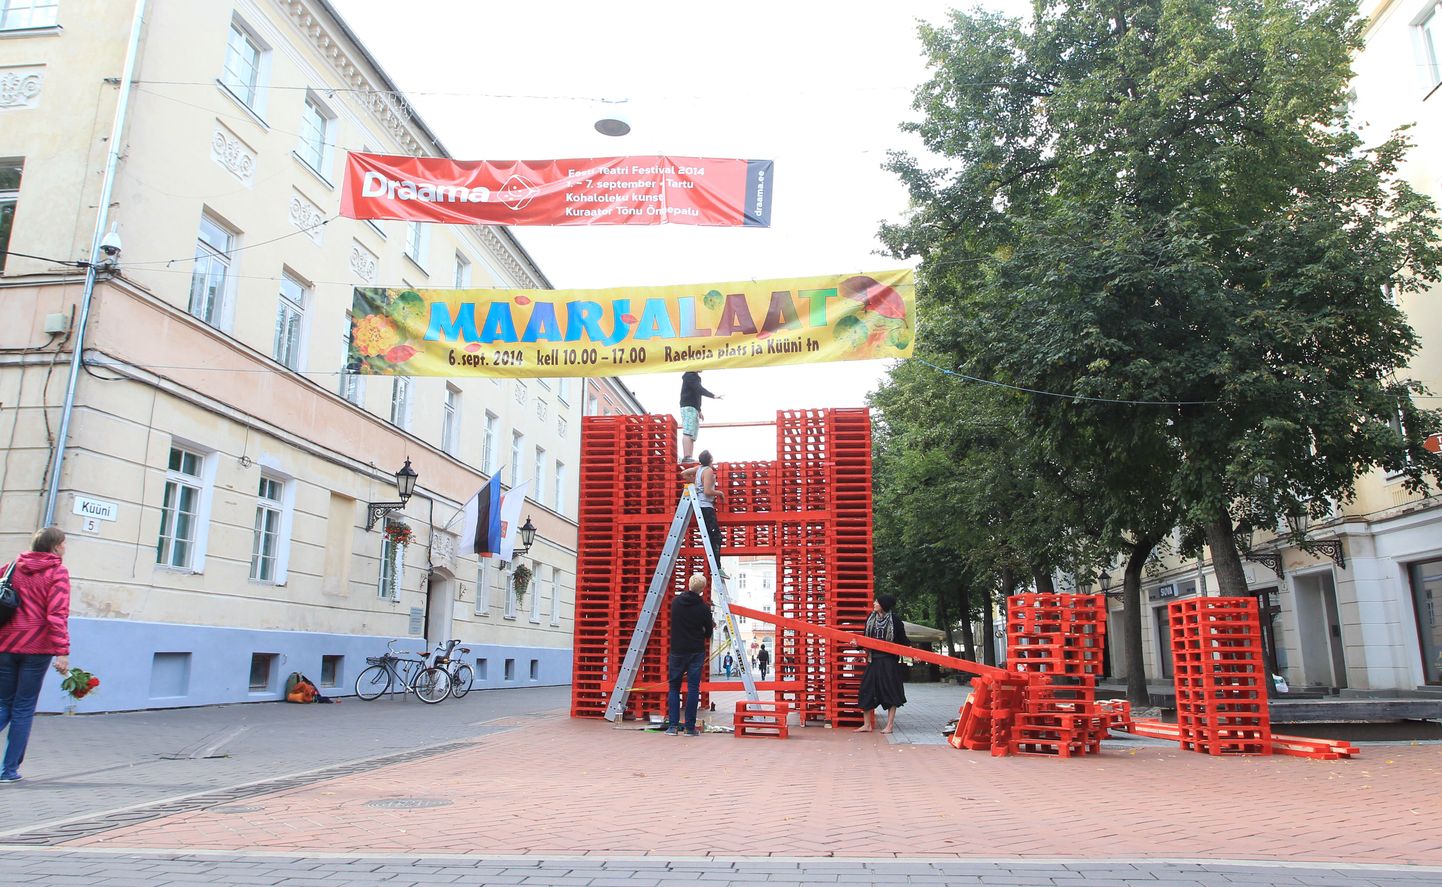 Festivali Draama paviljoni materjaliks on punaseks värvitud kaubaalused.